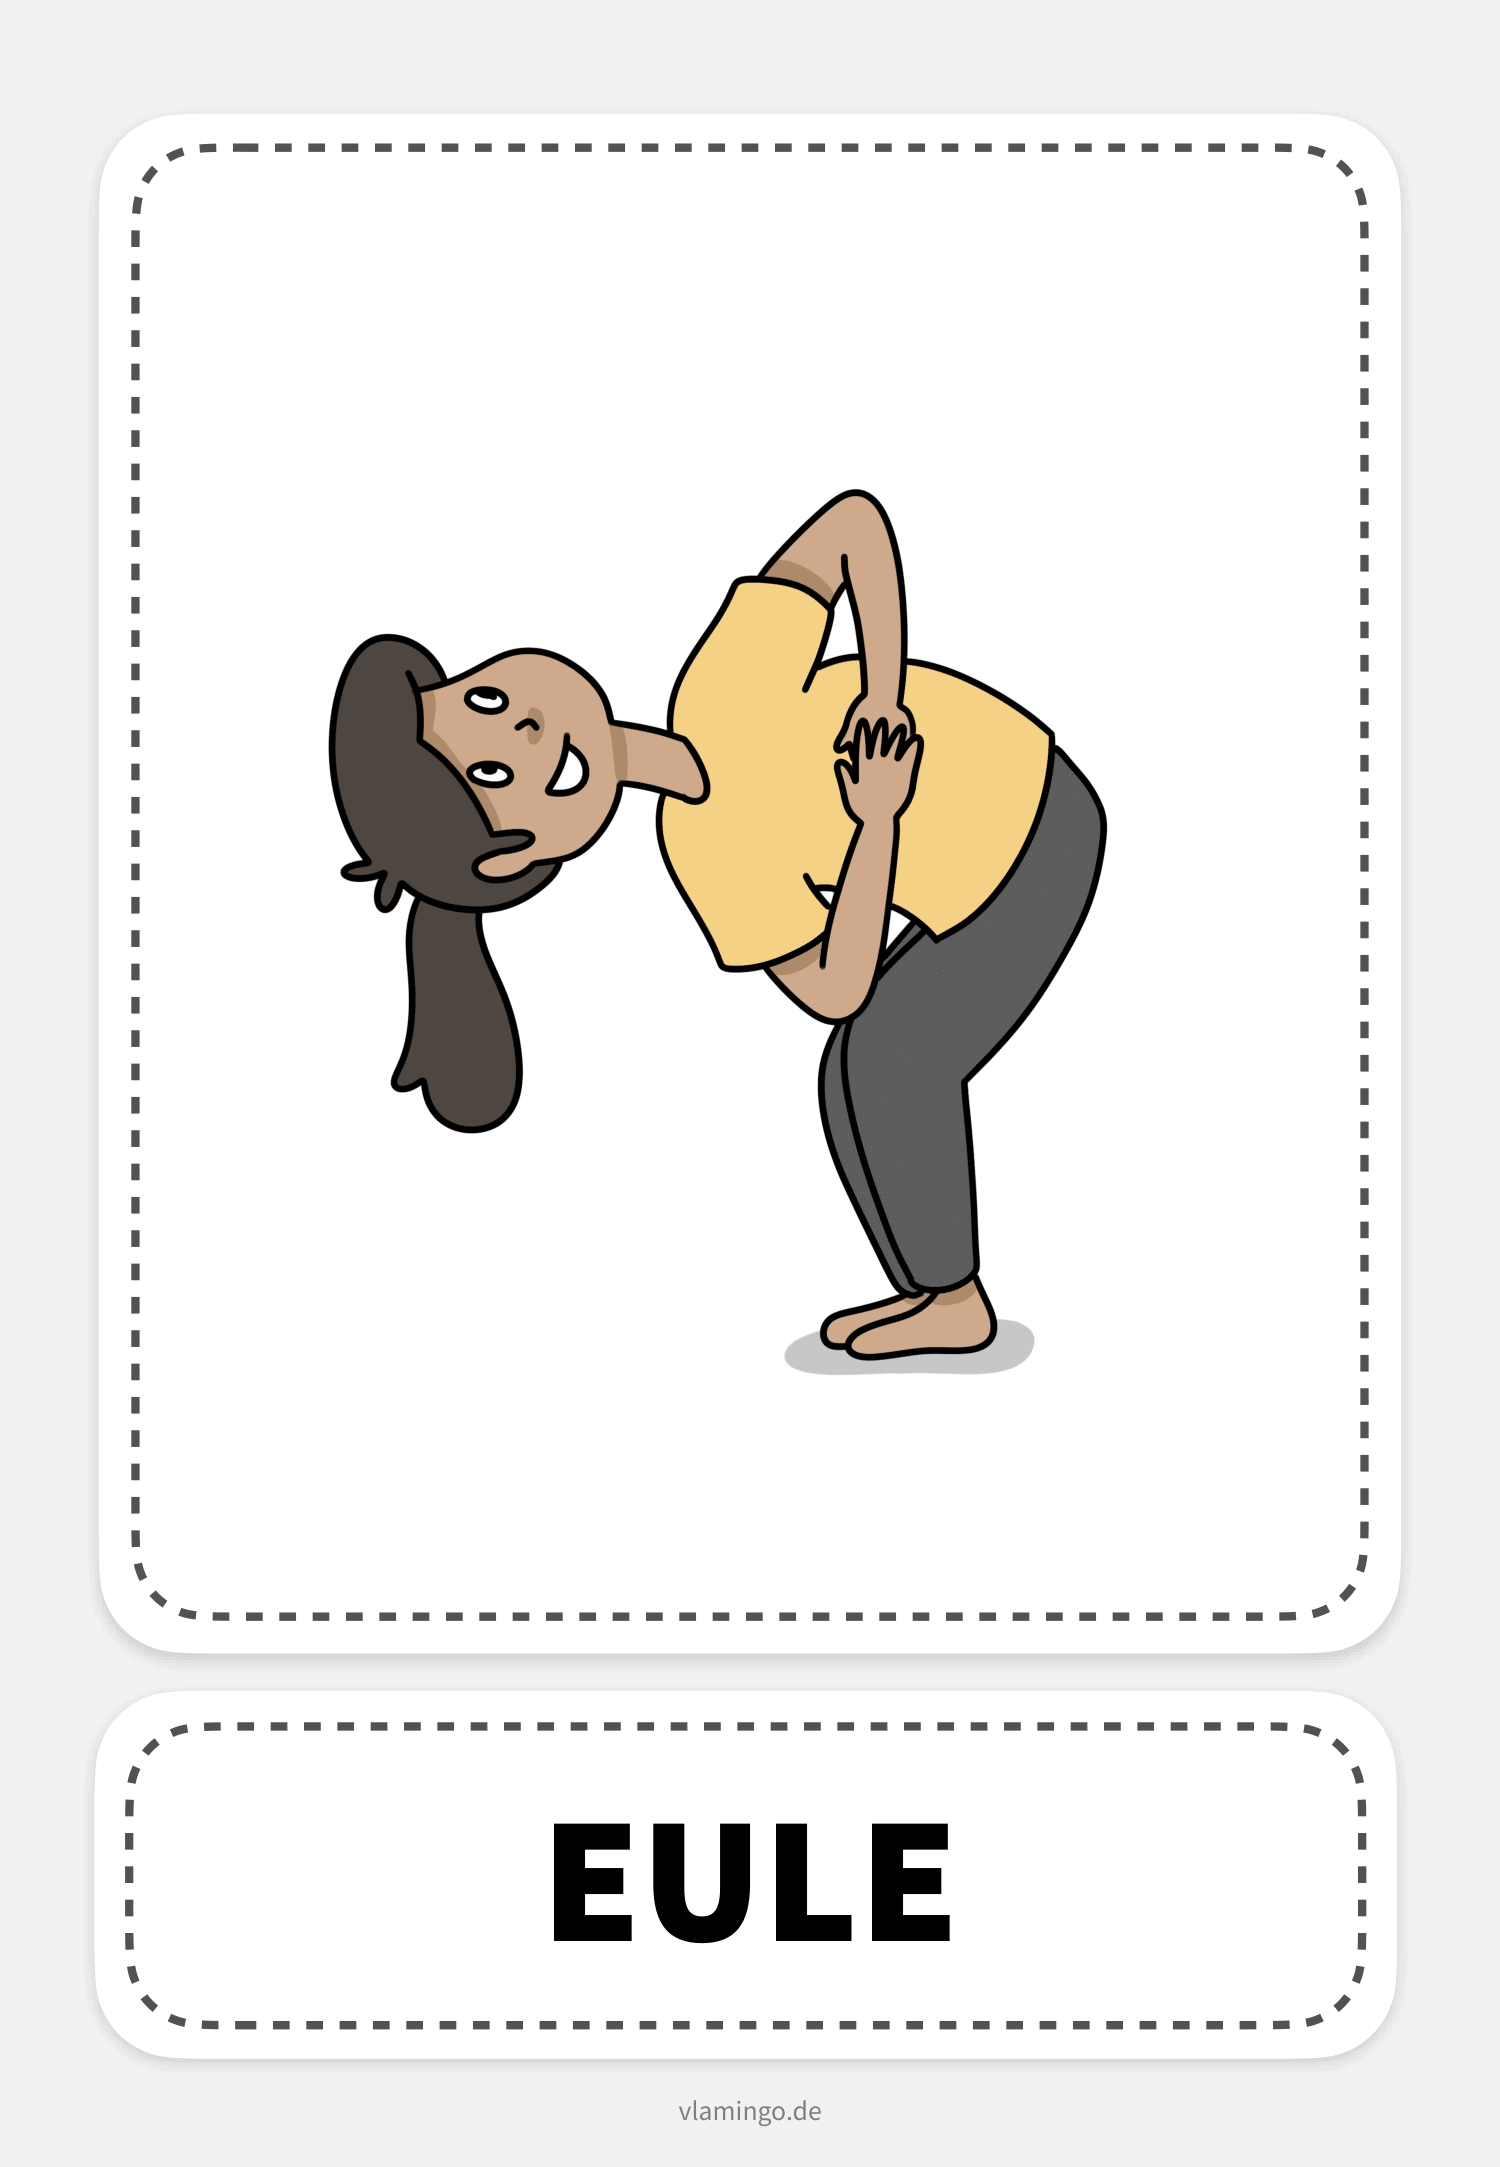 Eule - Yoga-Übung (Kinderyoga)